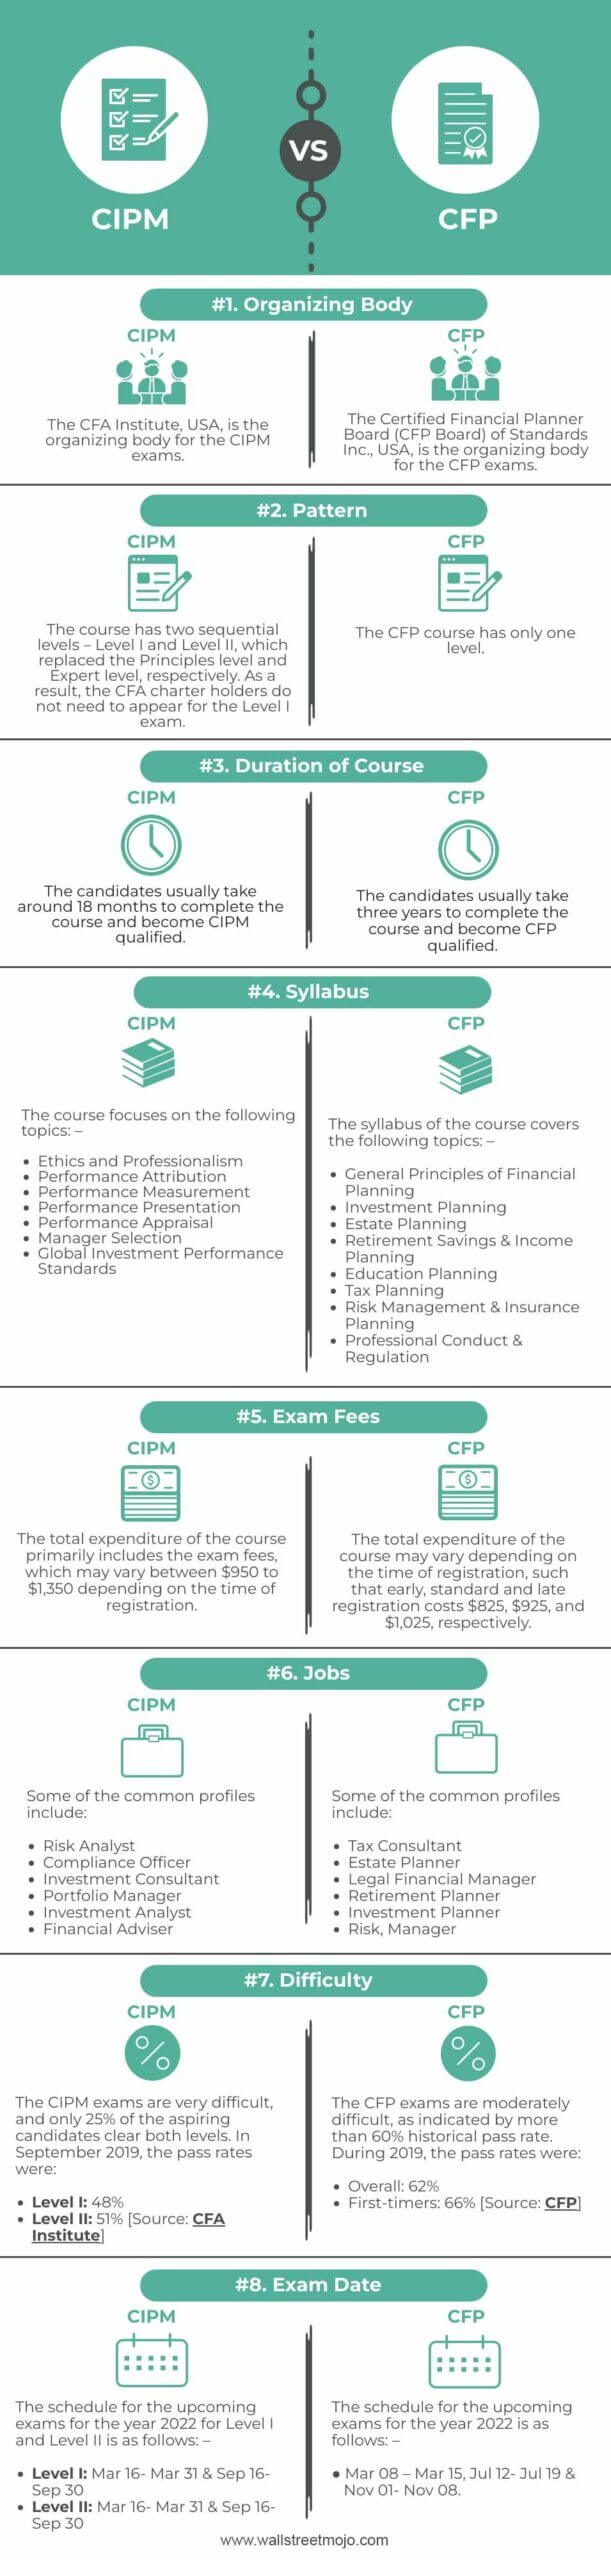 CIPM-vs-CFP-info